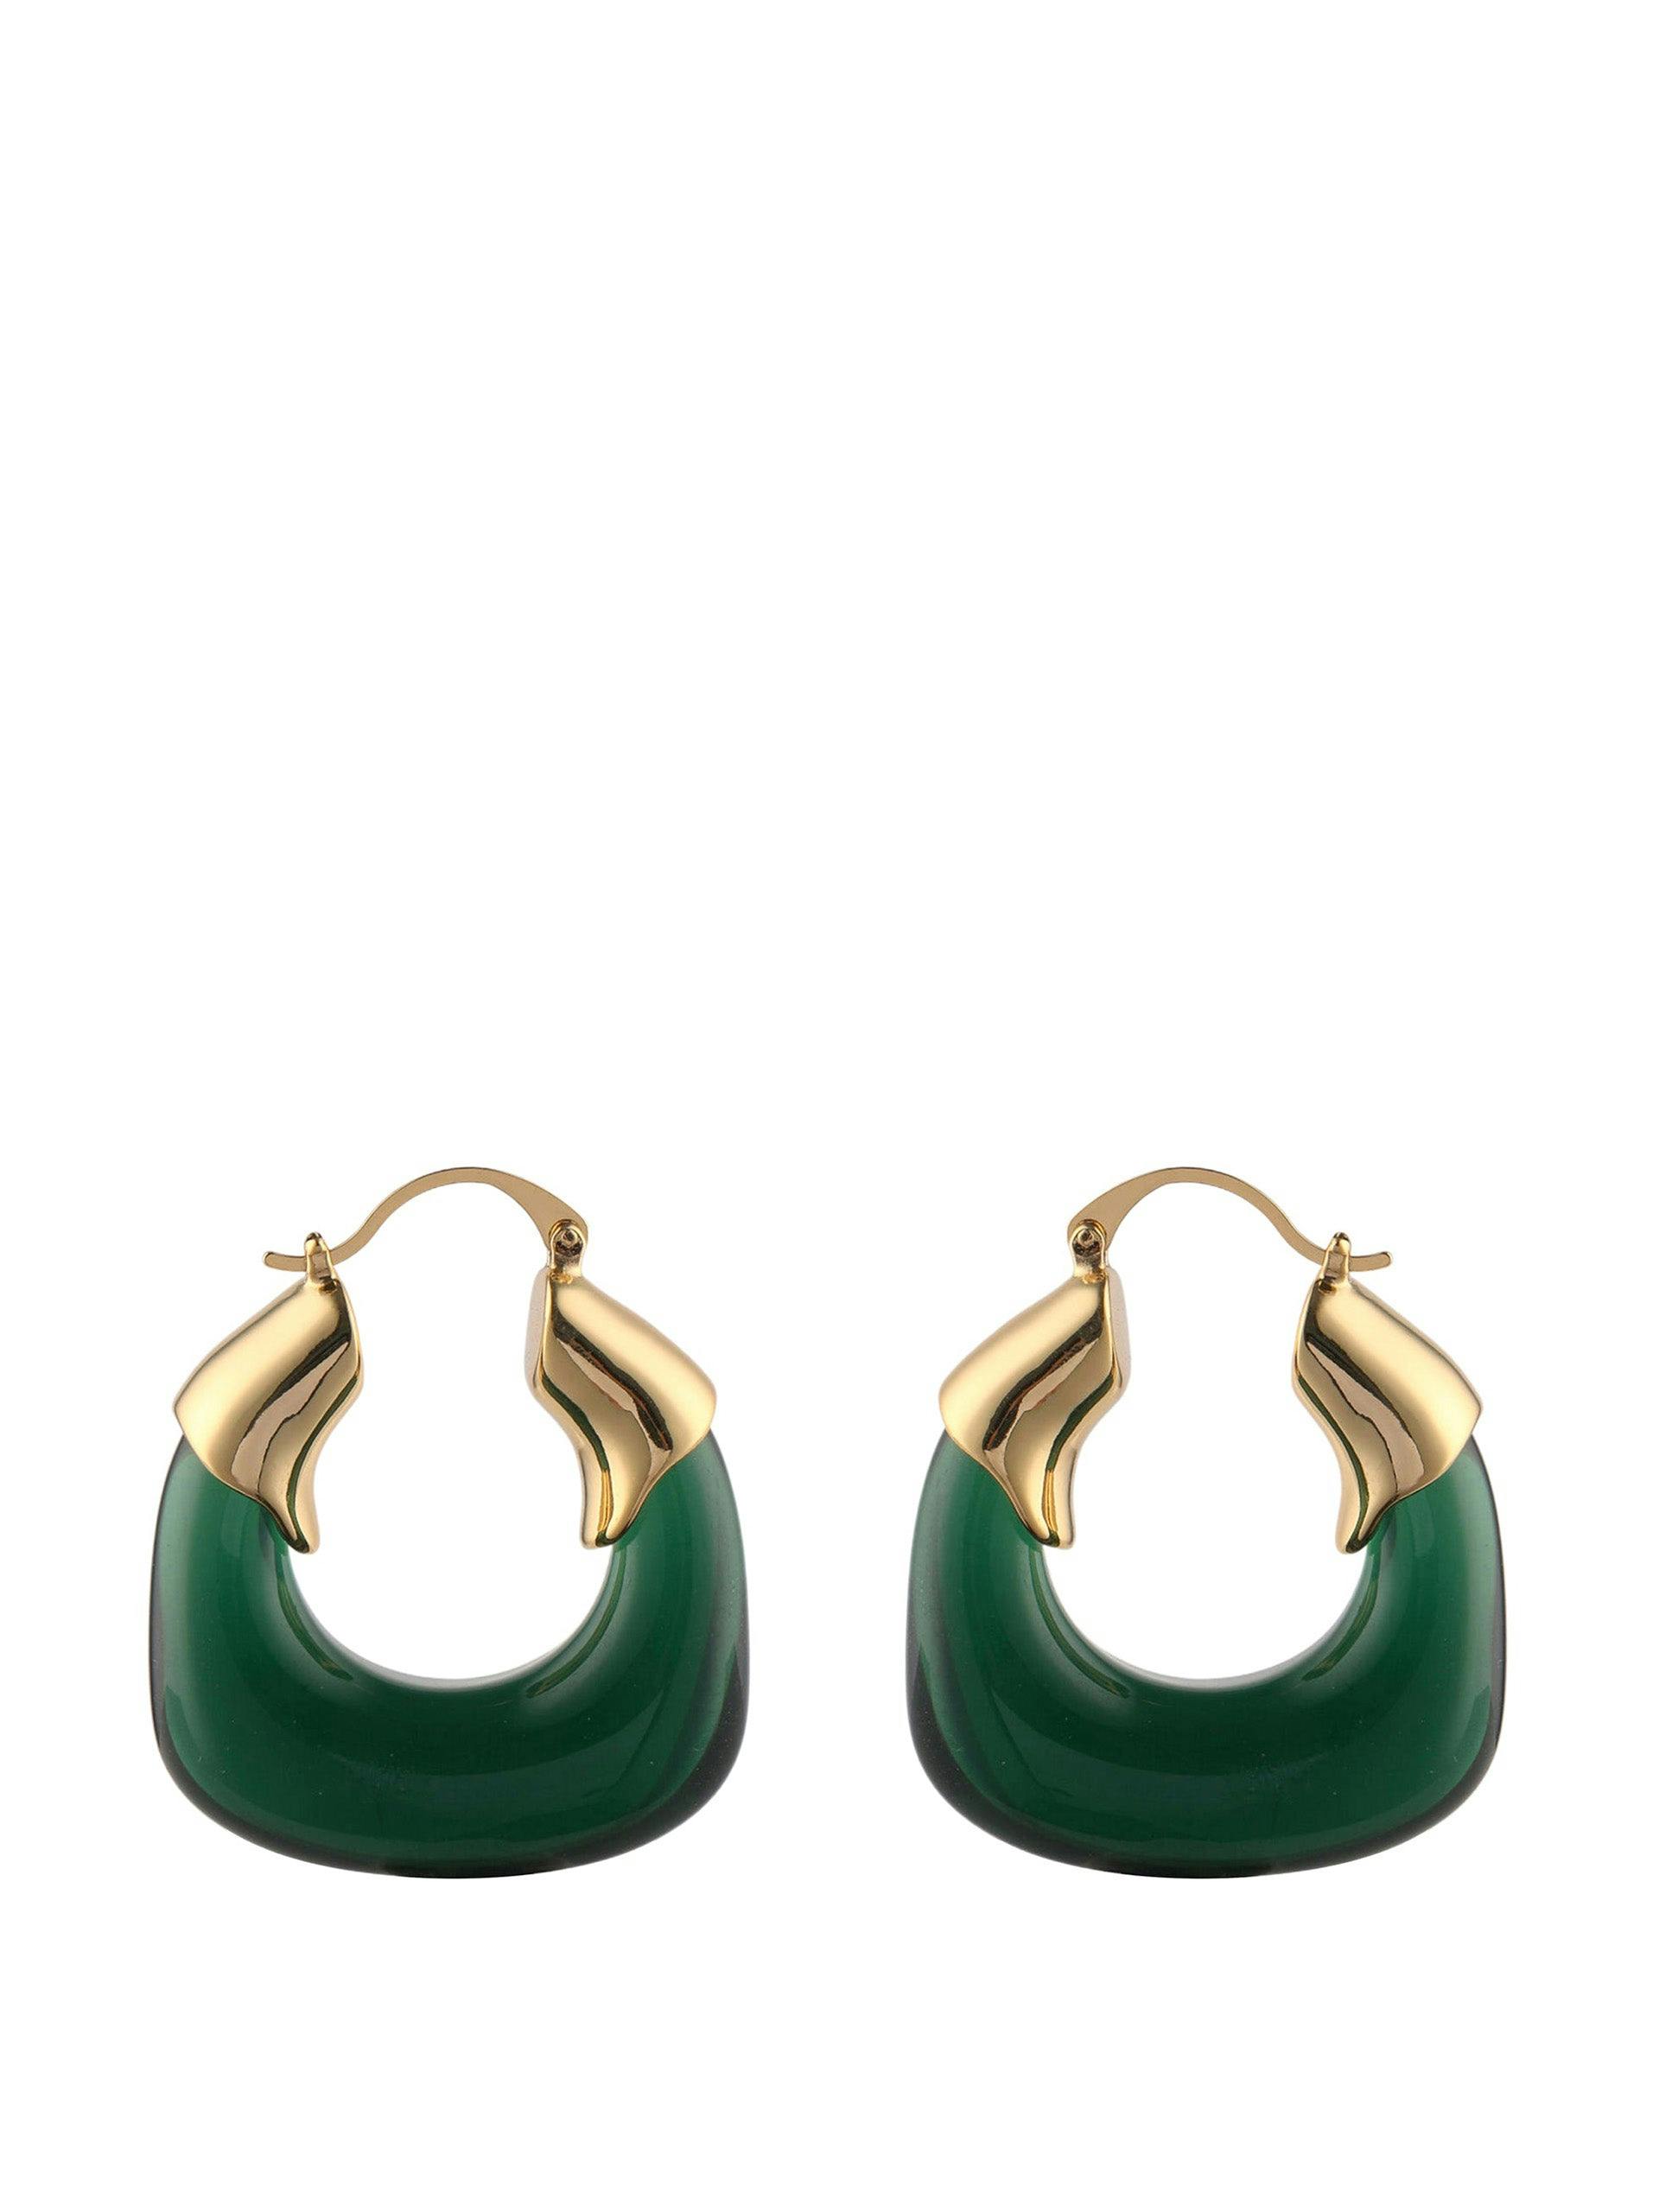 Statement chunky resin hoop earrings in green